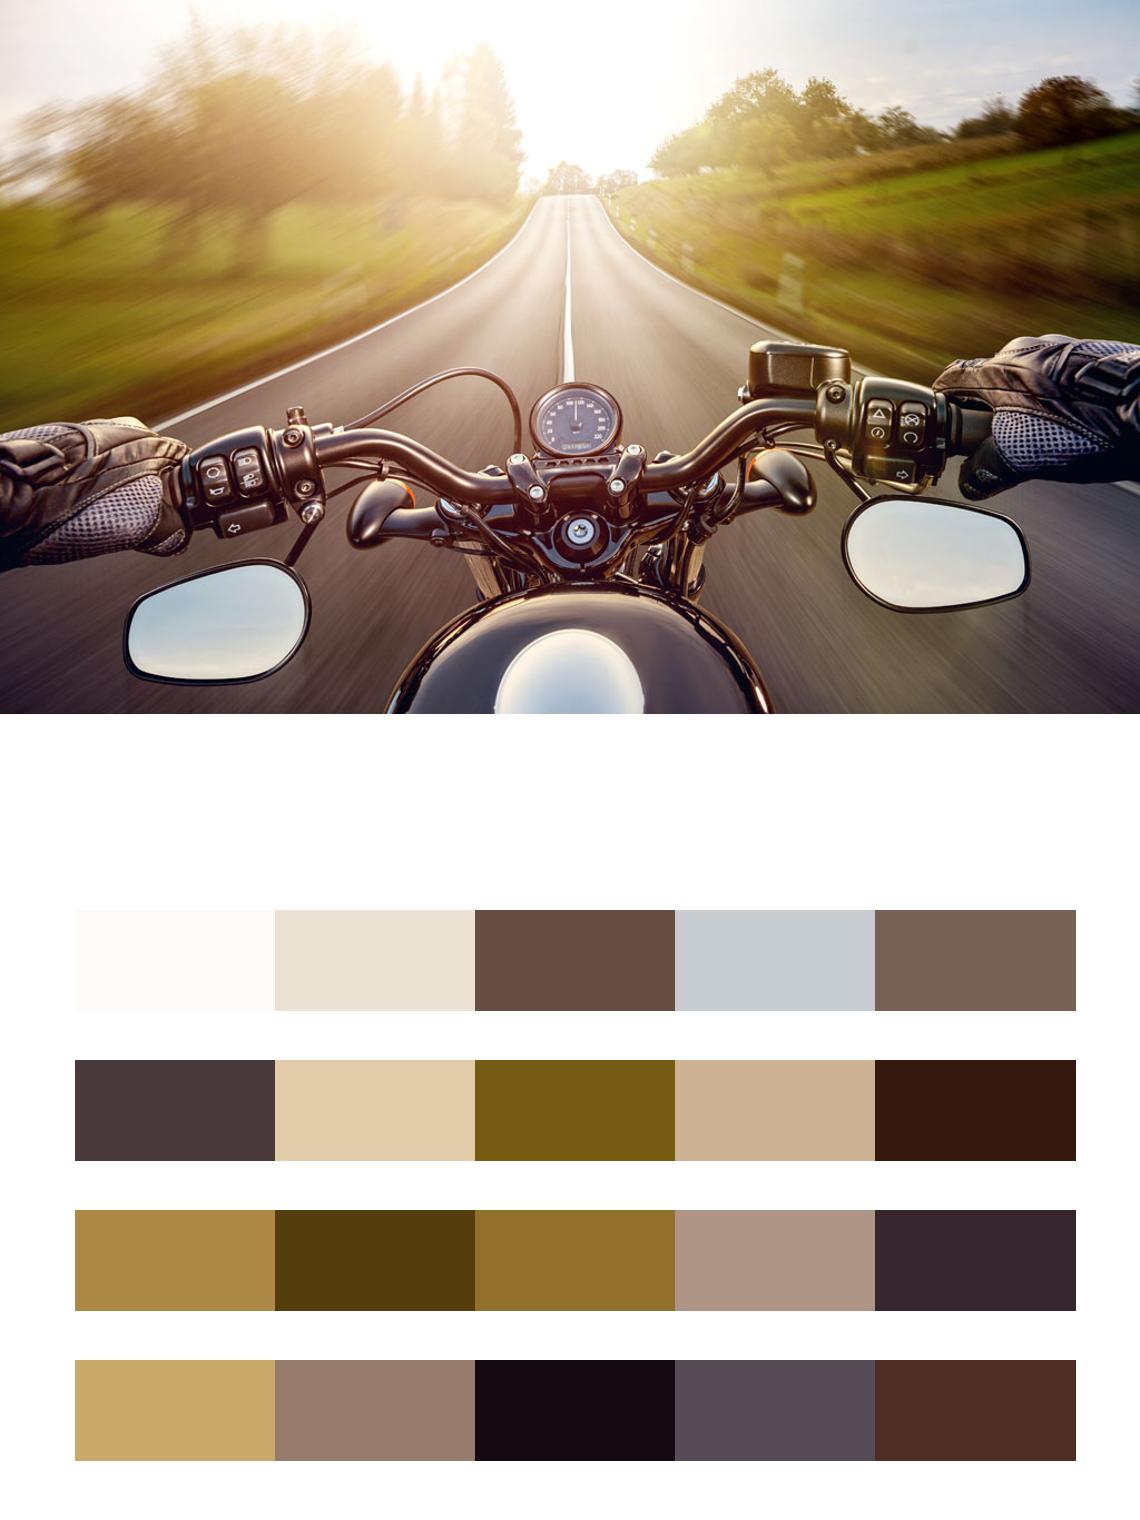 Дорога на мотоцикле цвета